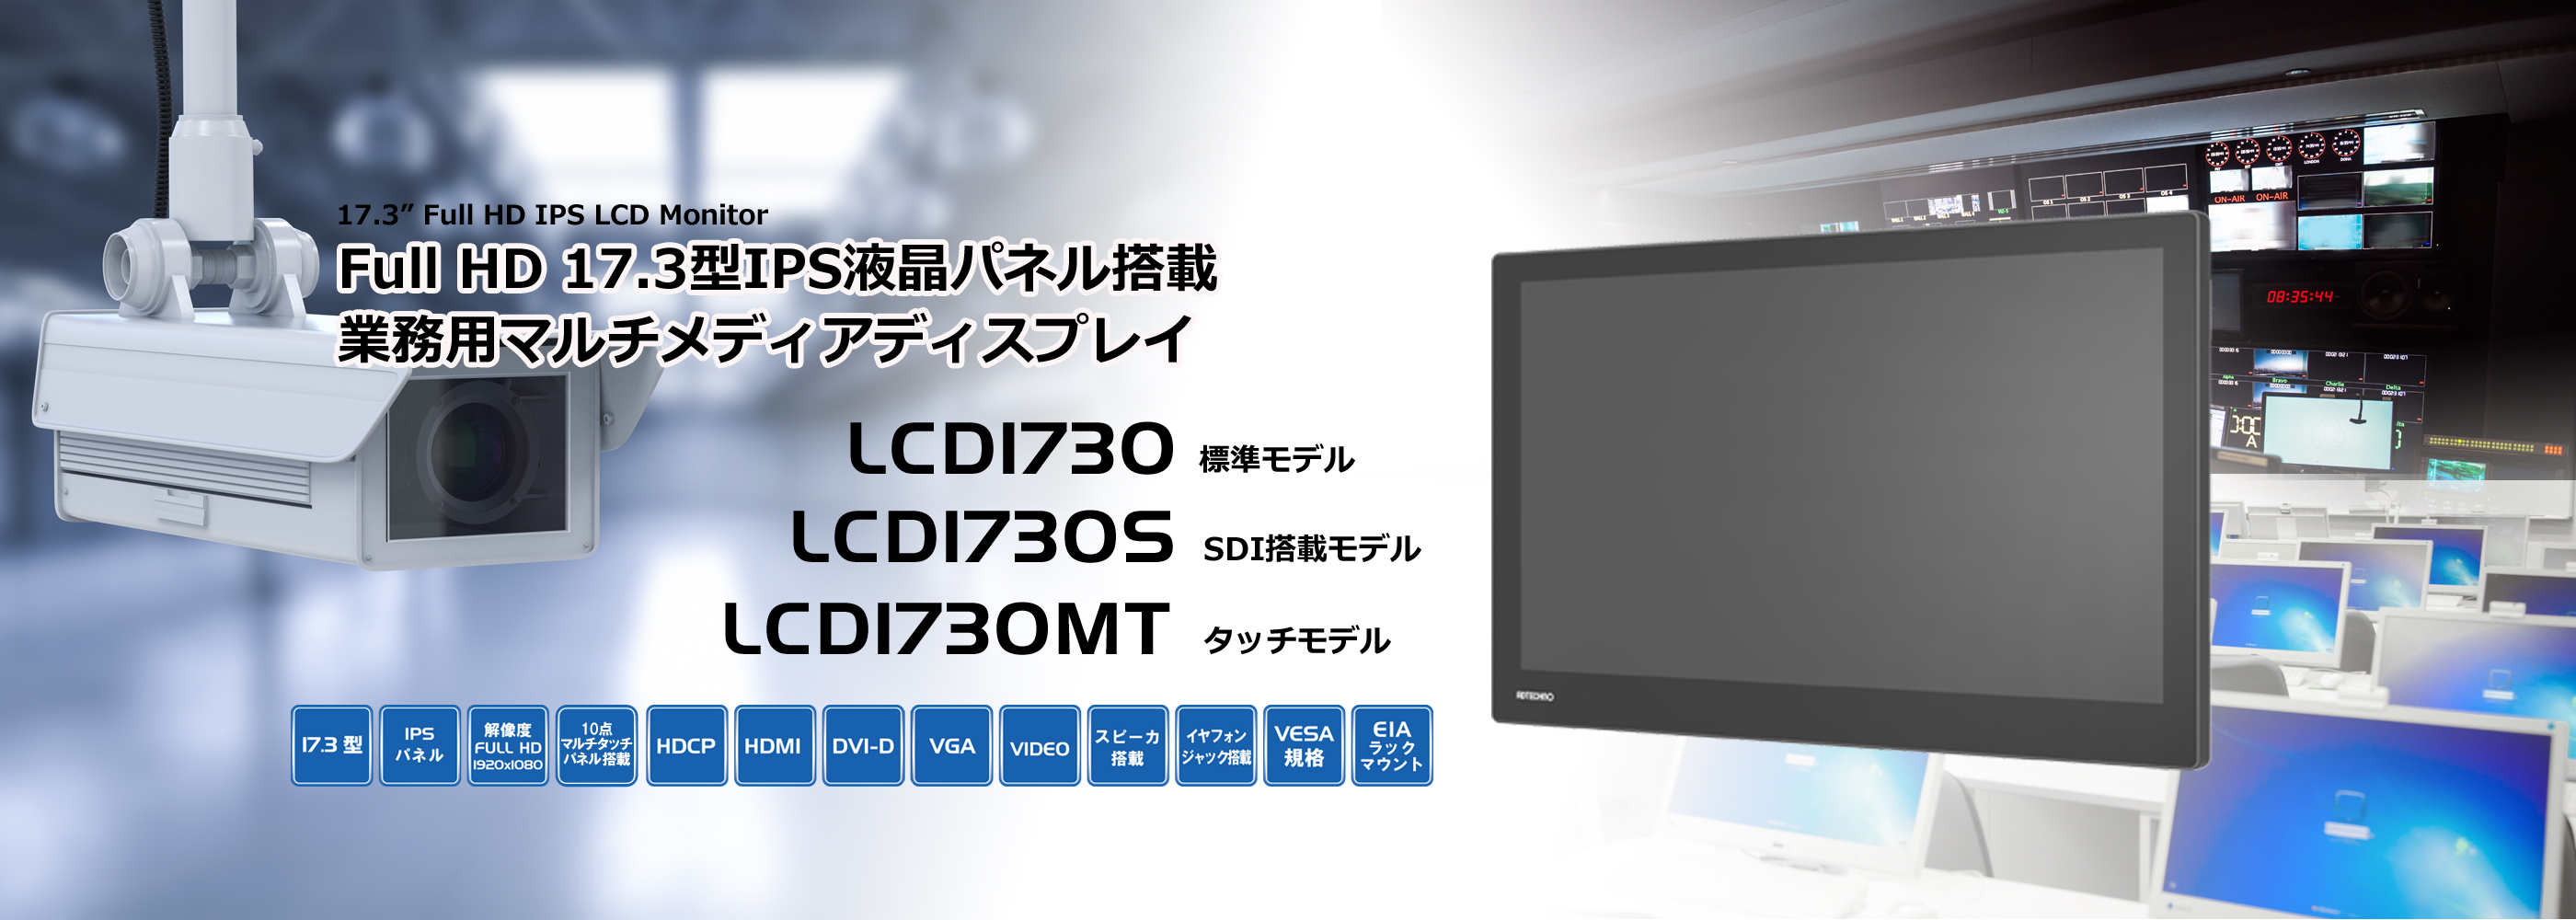 LCD1730